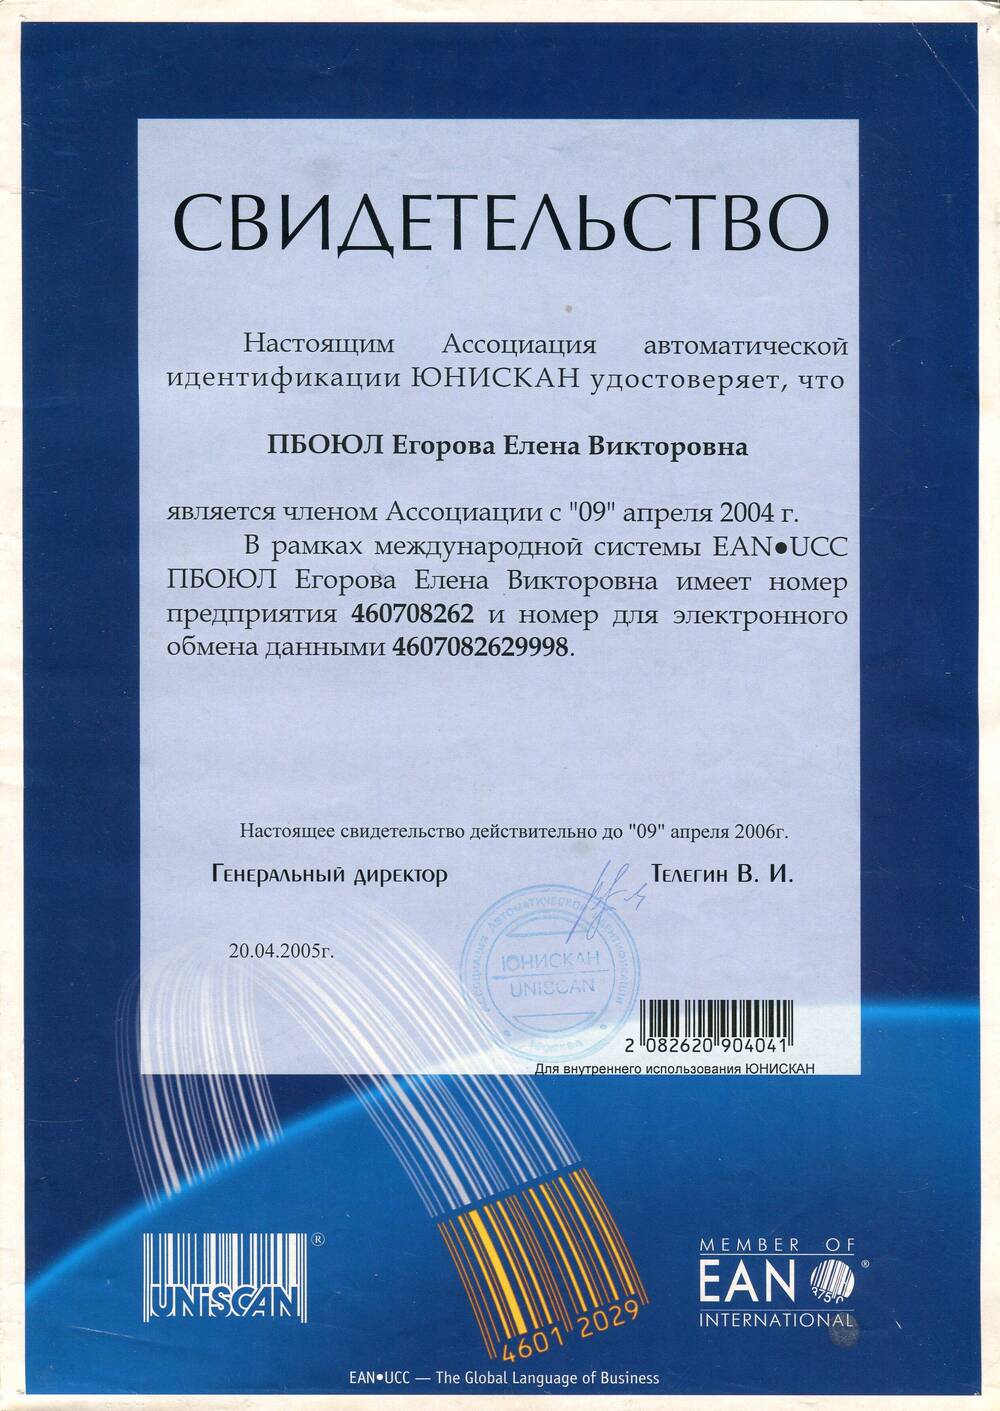 Свидетельство Ассоциации автоматической идентификации ЮНИСКАН о том, что ПБОЮЛ Егорова Елена Викторовна является членом Ассоциации с 09 апреля 2004г.